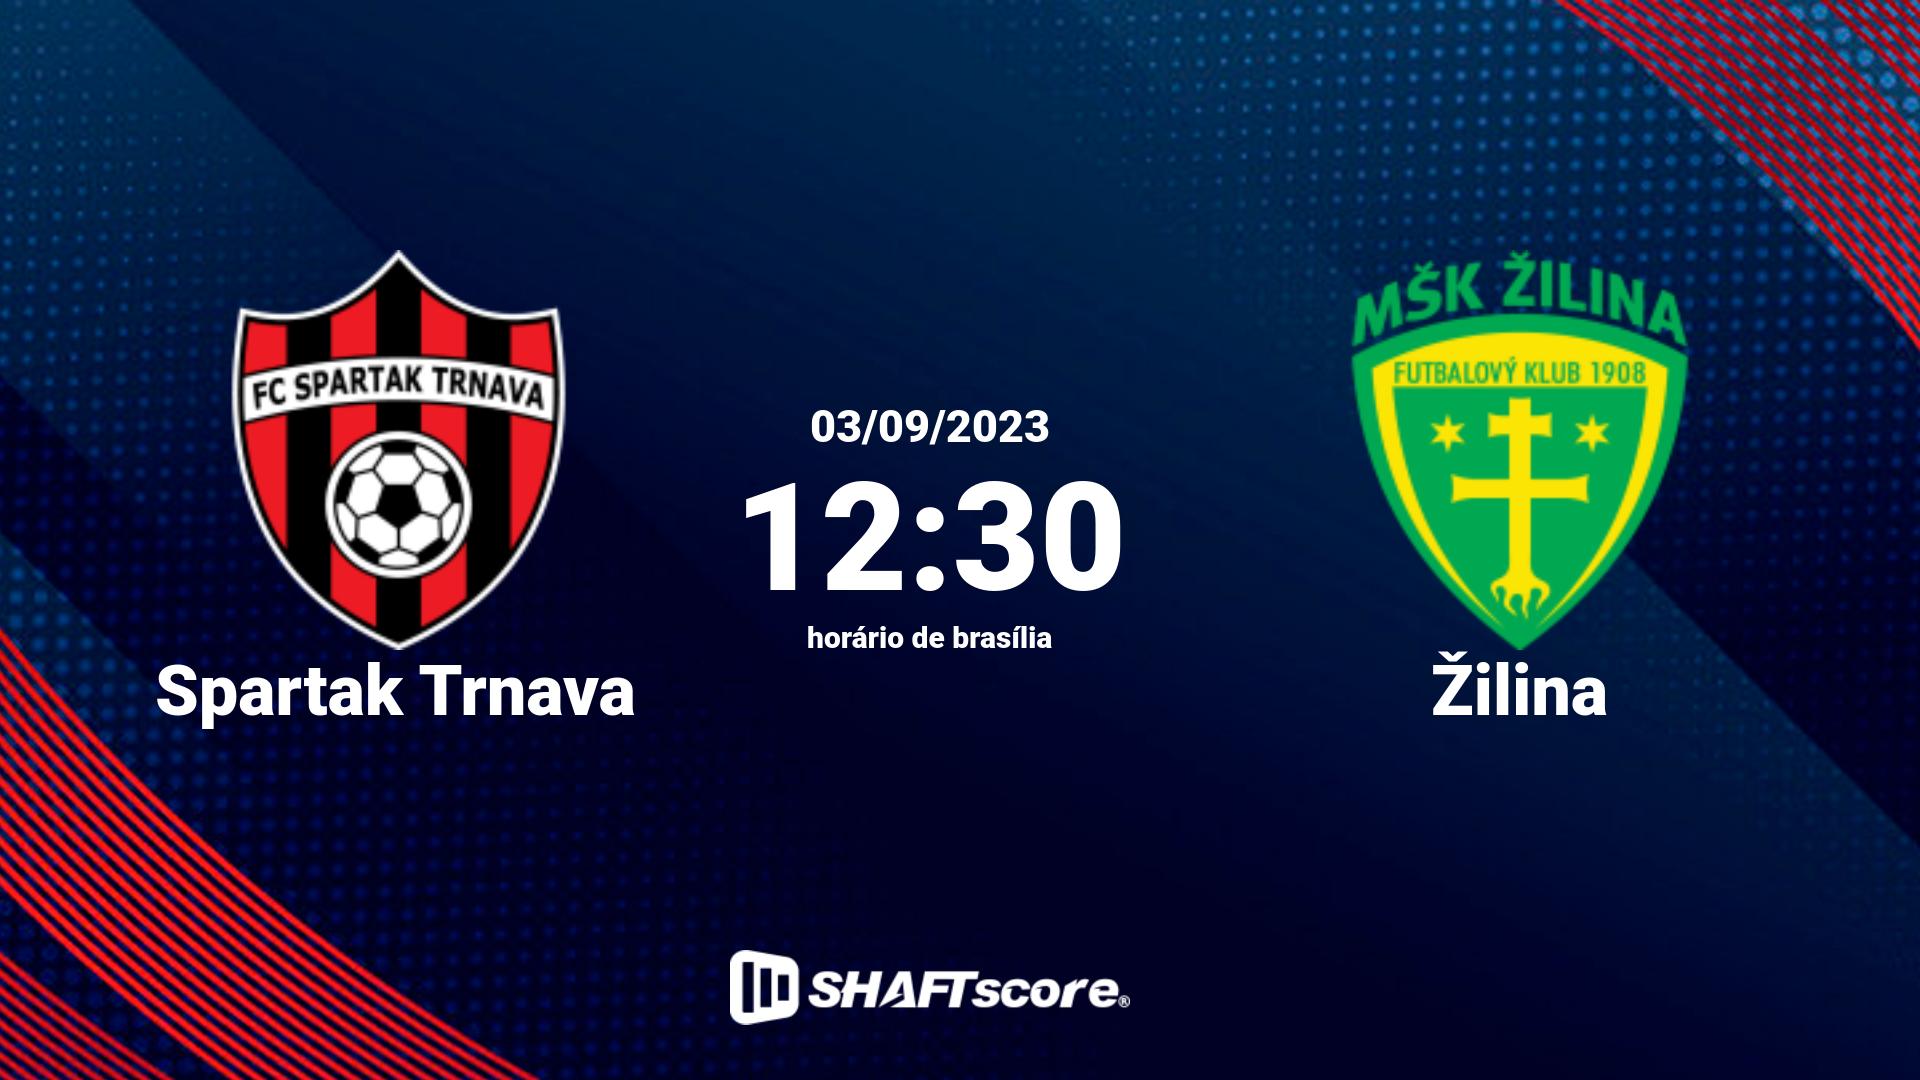 Estatísticas do jogo Spartak Trnava vs Žilina 03.09 12:30